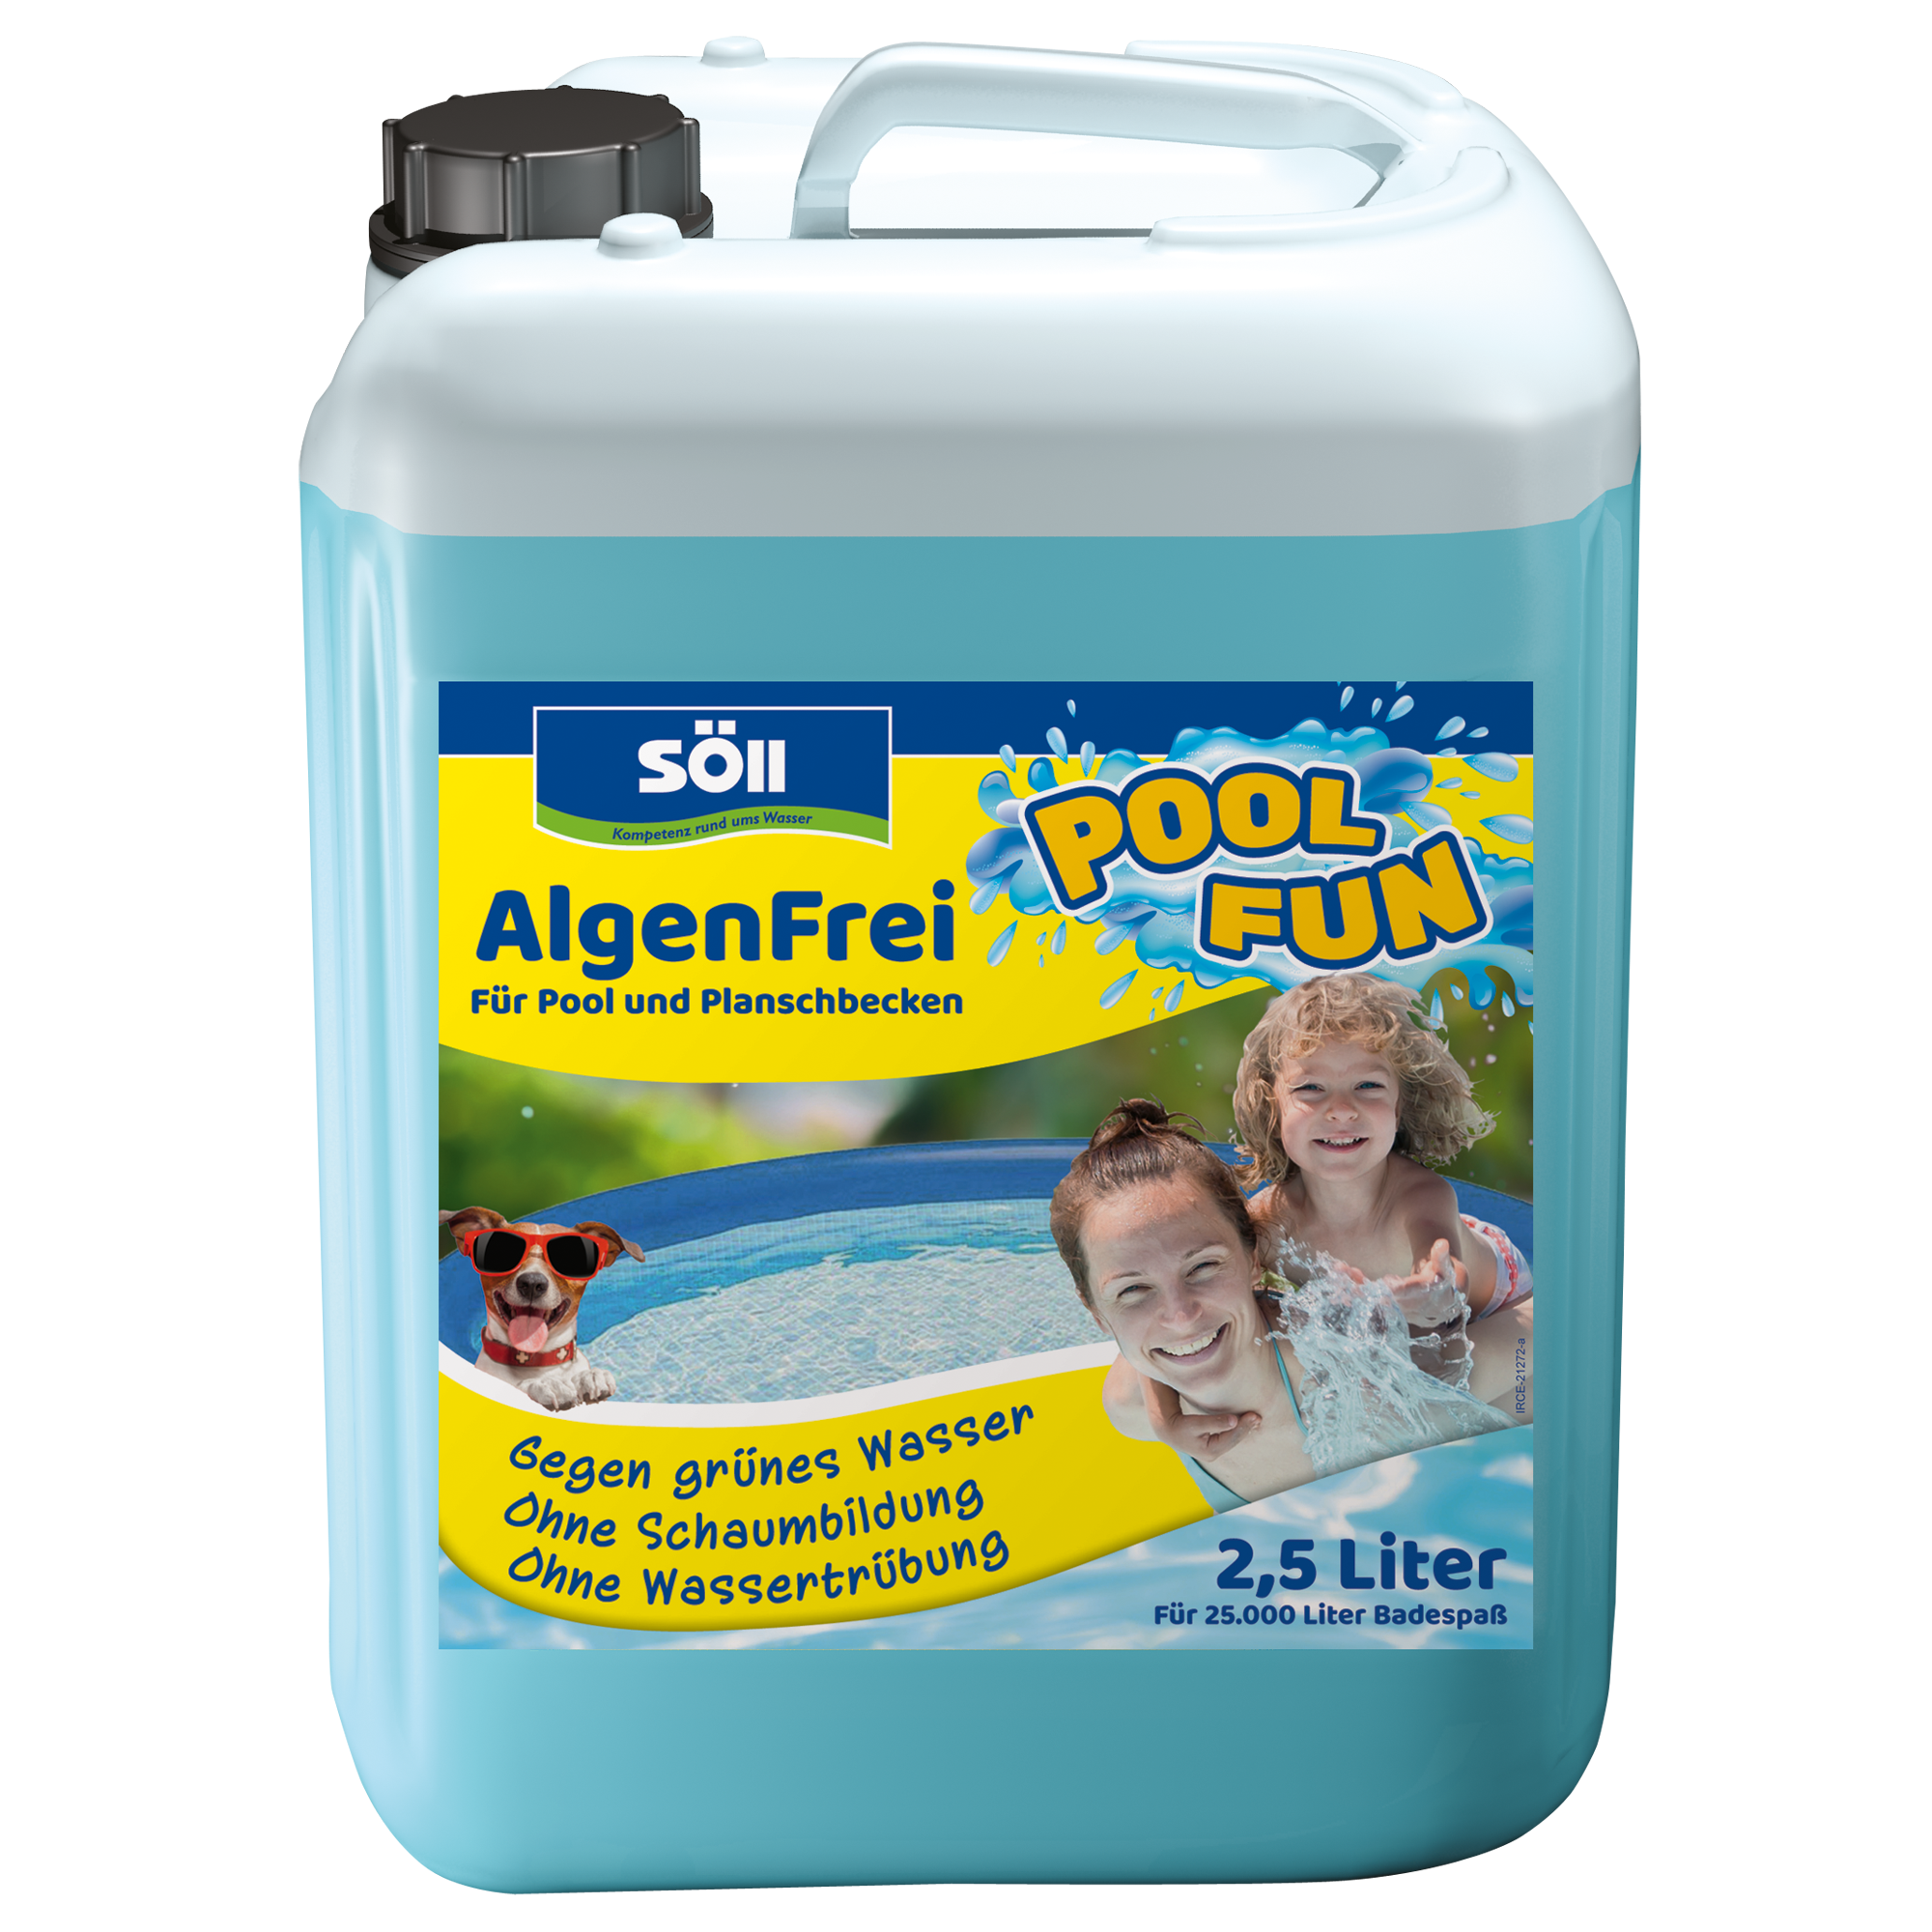 Algenentferner 'AlgenFrei' 2,5 Liter + product picture